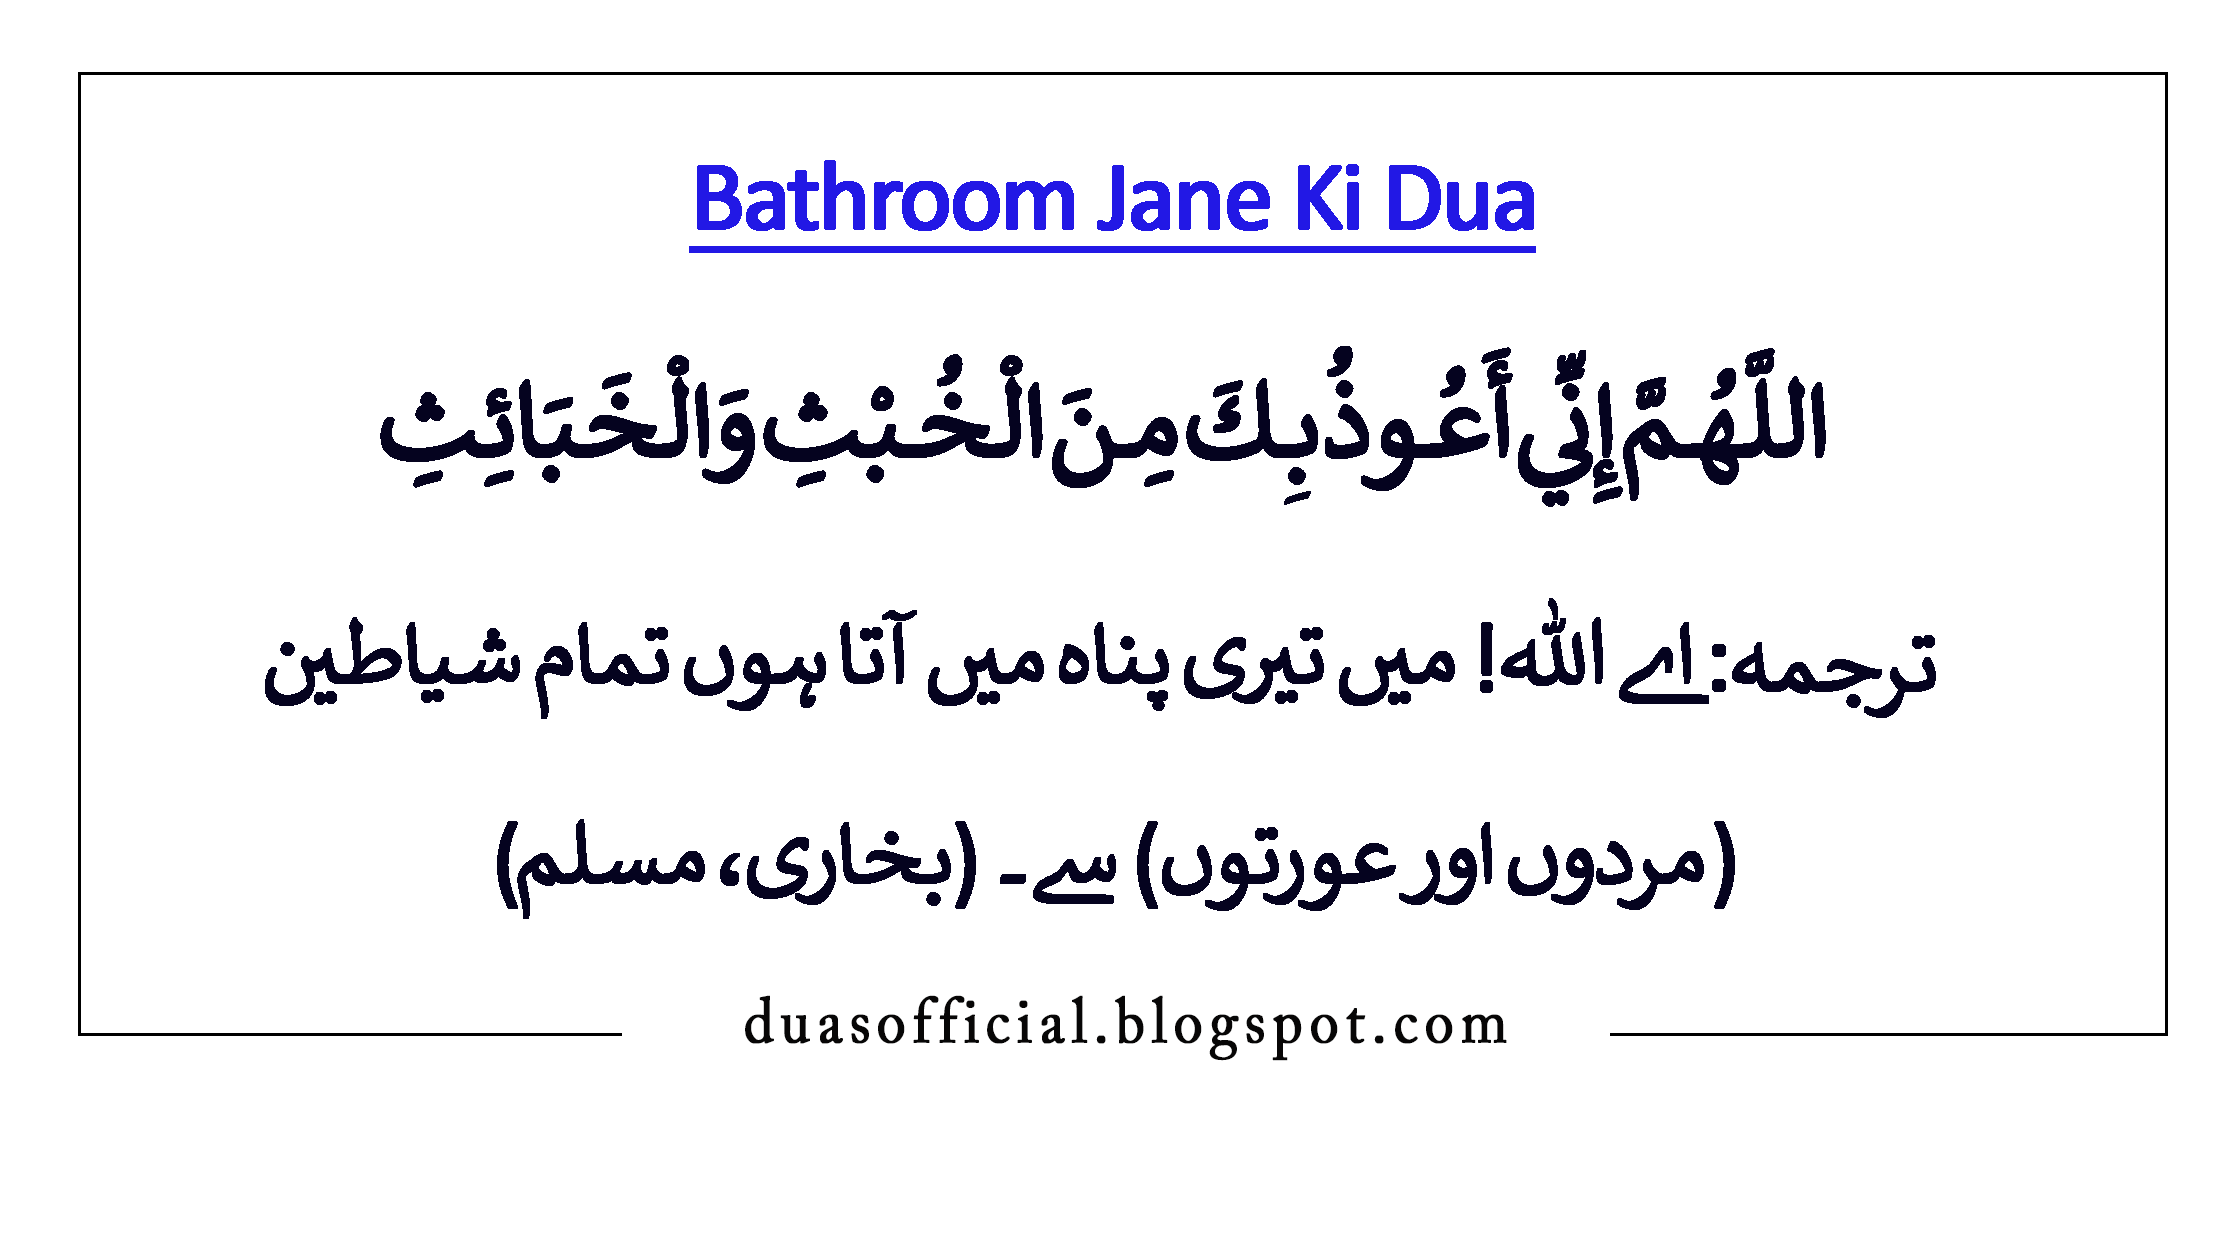 Bathroom jane ki dua with translation